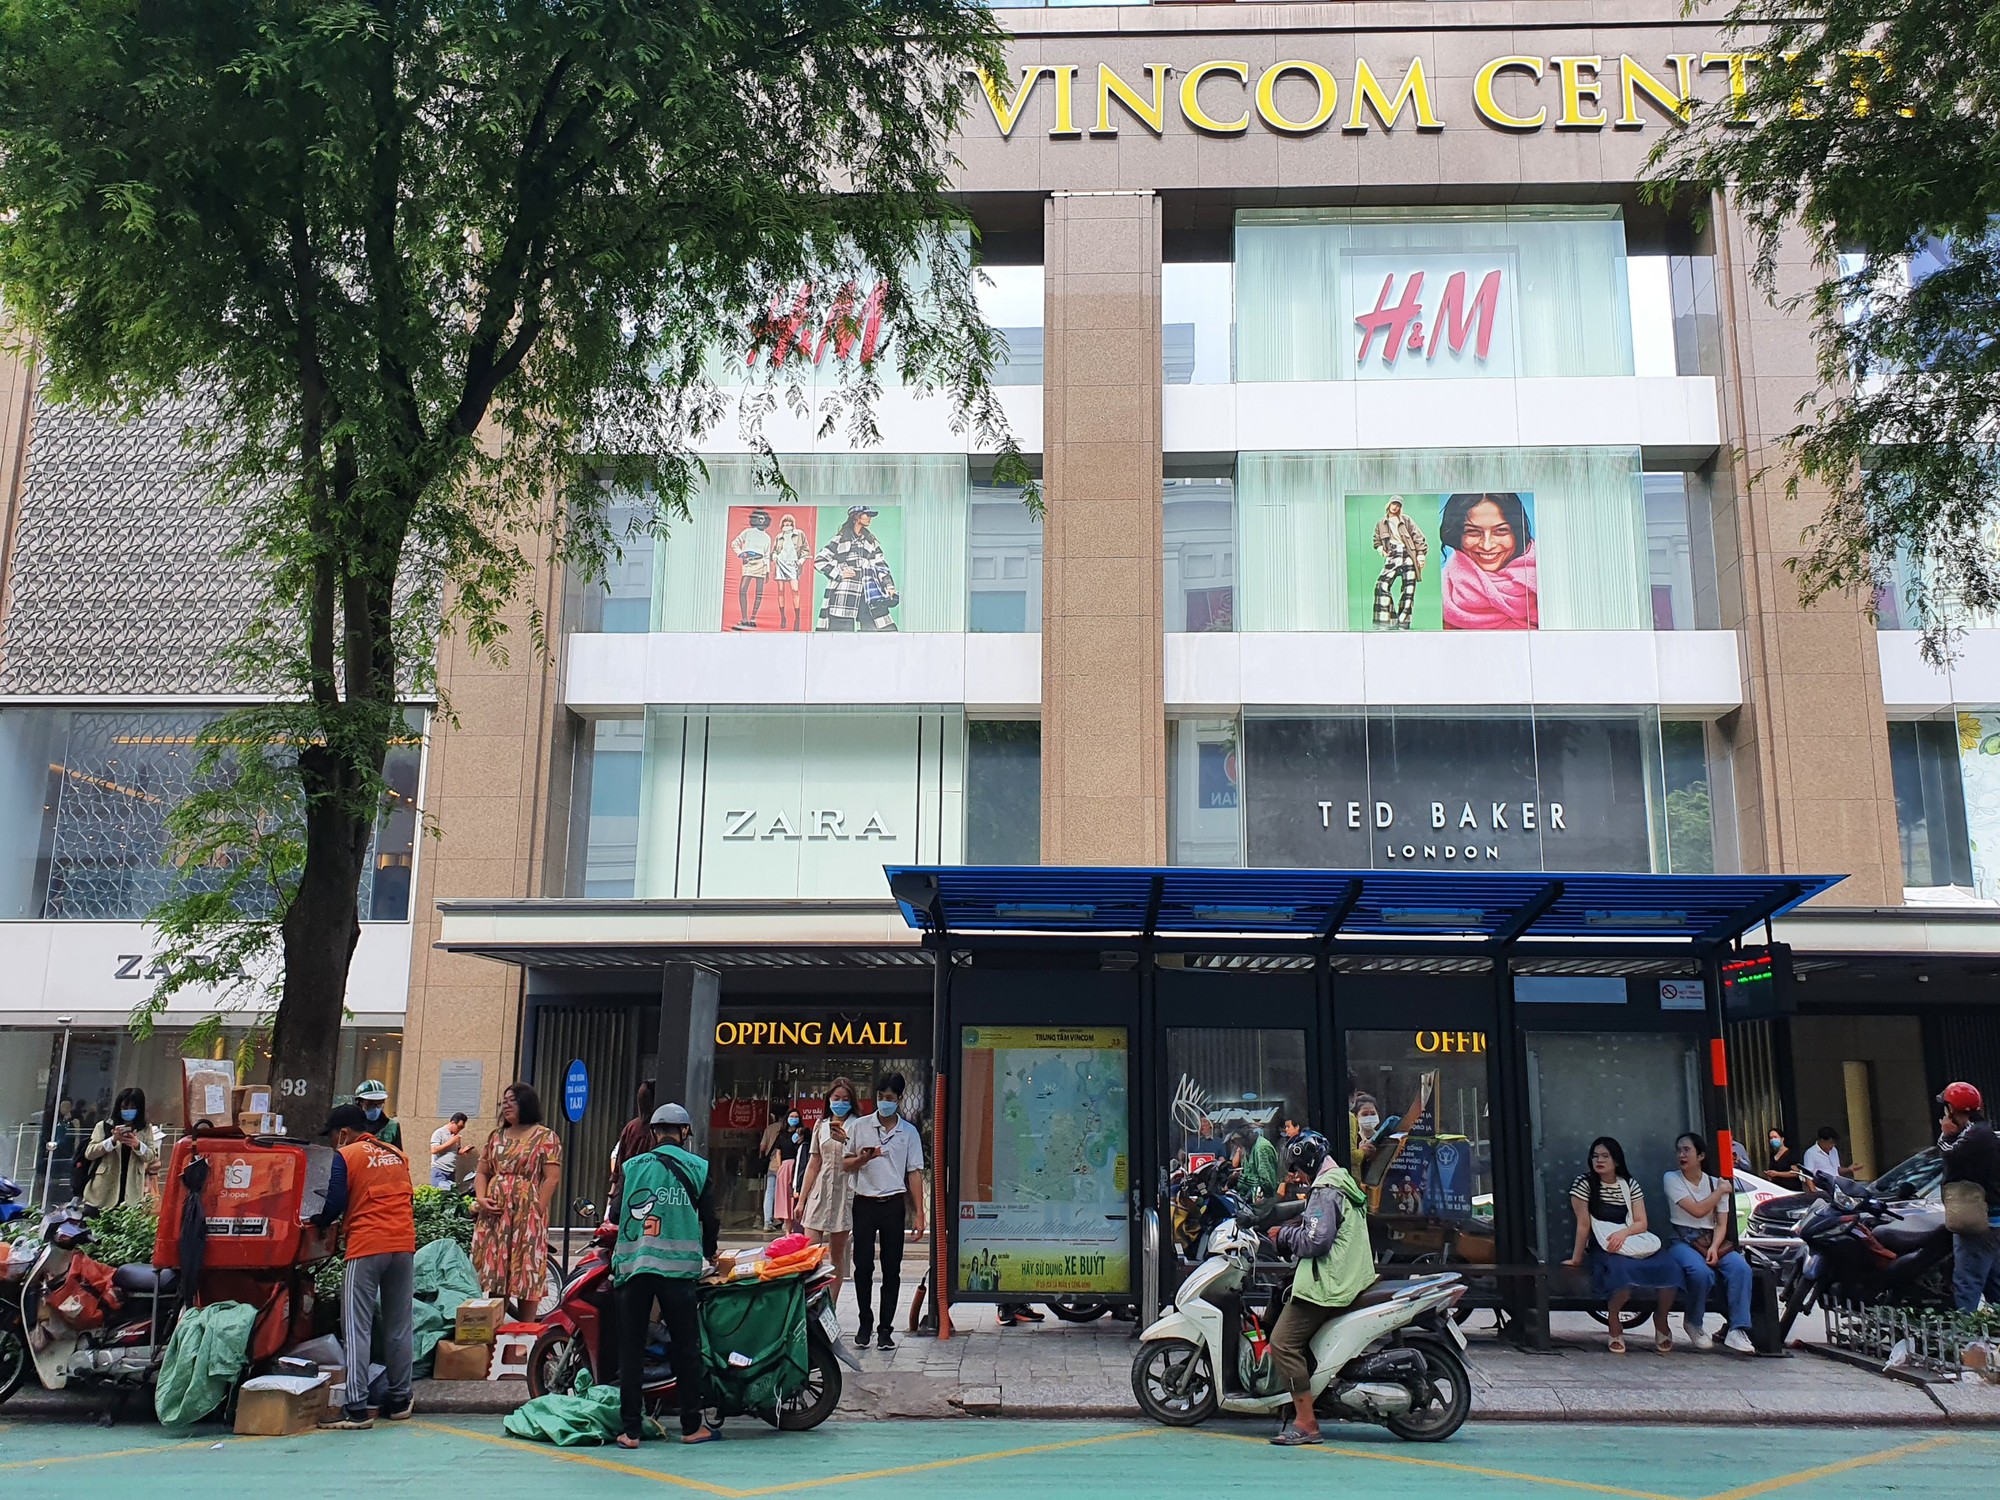 Hàng hiệu xa xỉ, khách sạn 5 sao, thiên đường mua sắm chen nhau trên con đường dát vàng ở Sài Gòn - Ảnh 7.